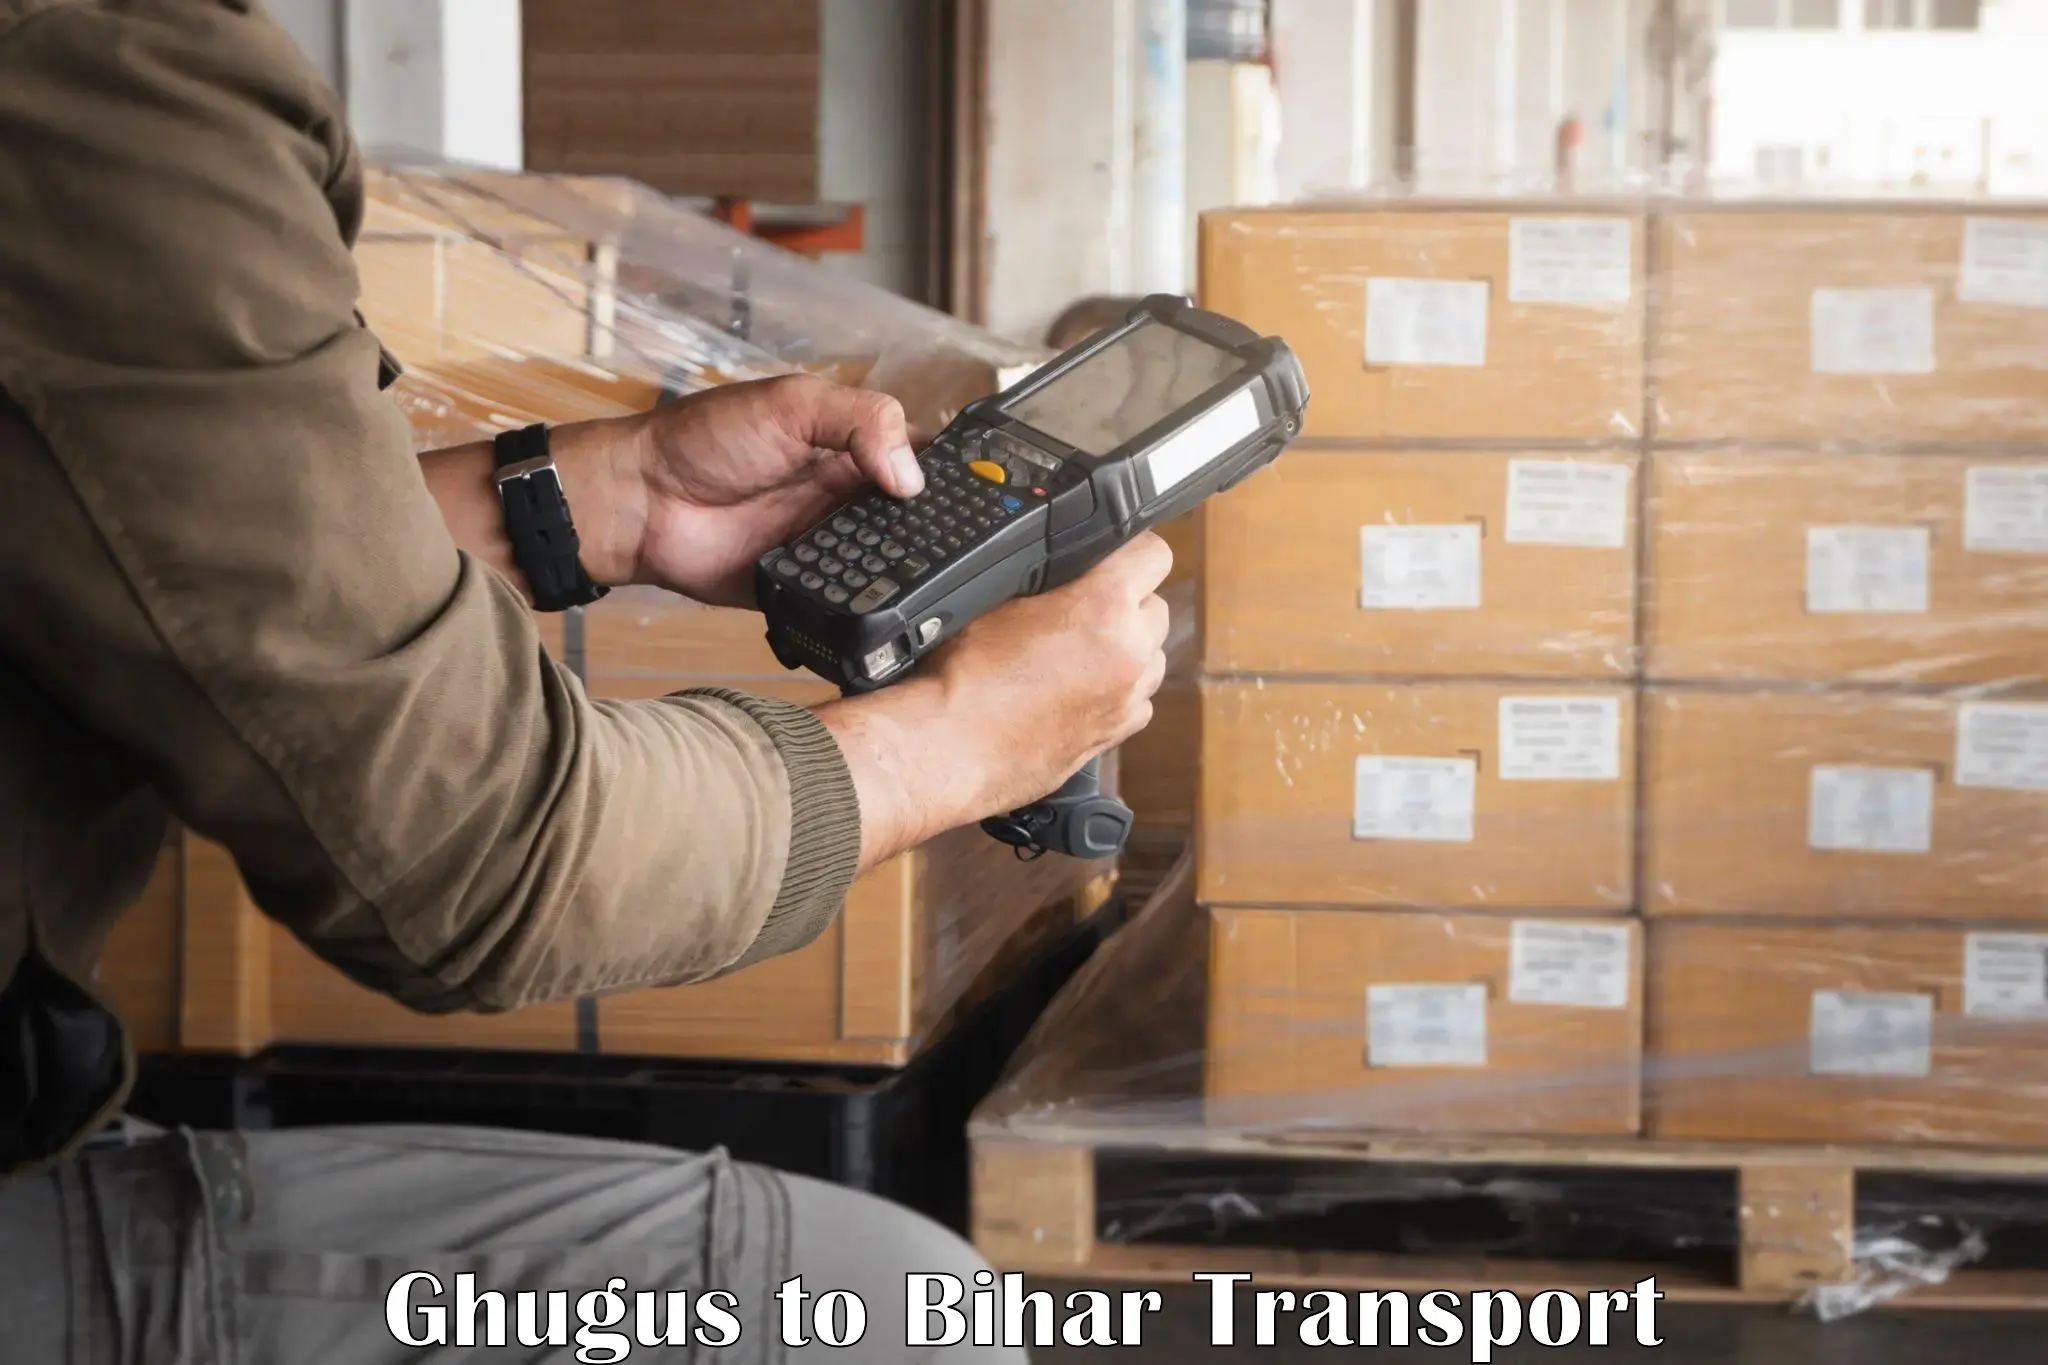 Furniture transport service Ghugus to Bakhri